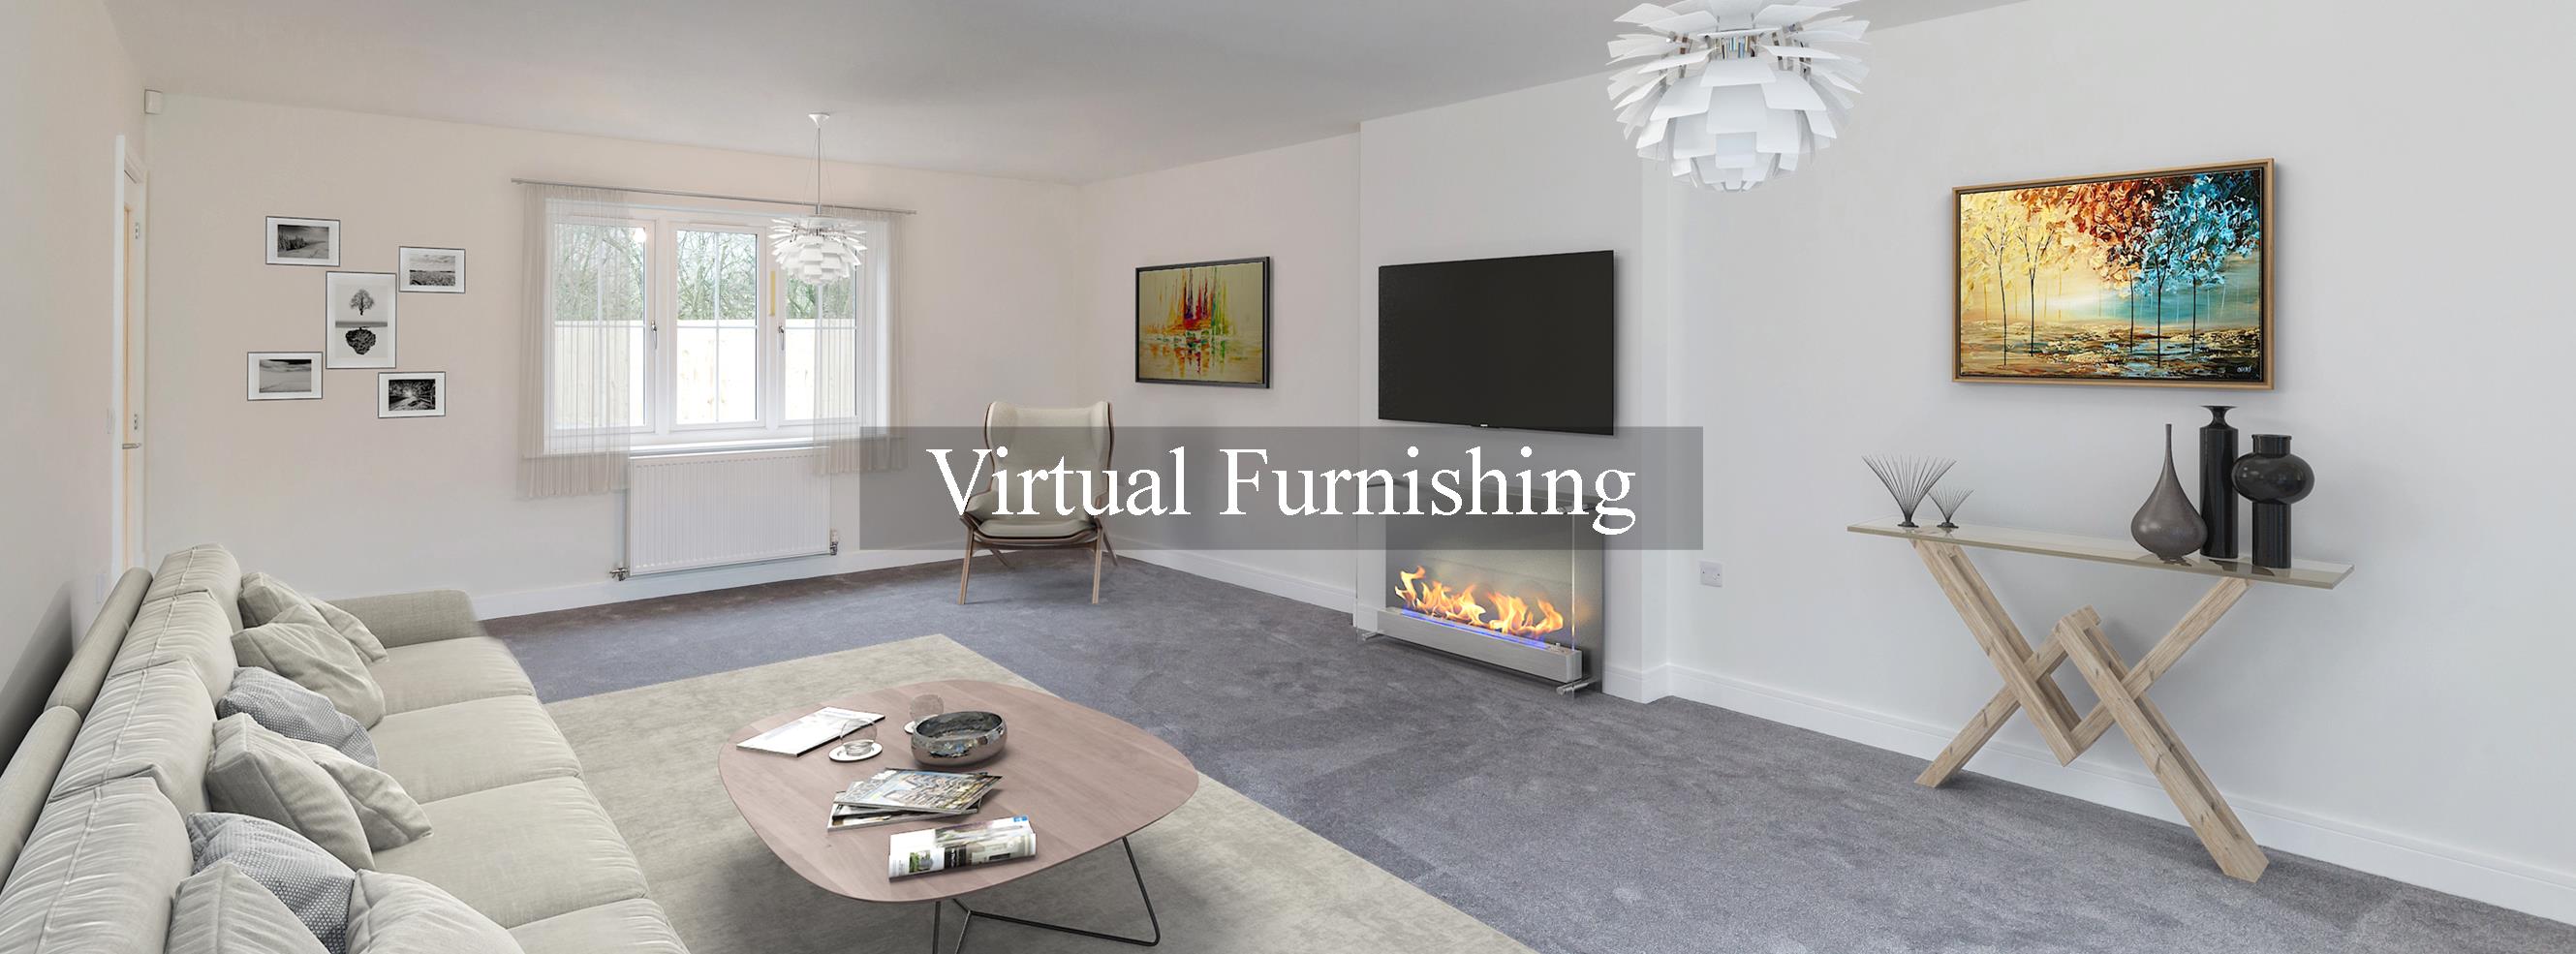 virtual_furnishing